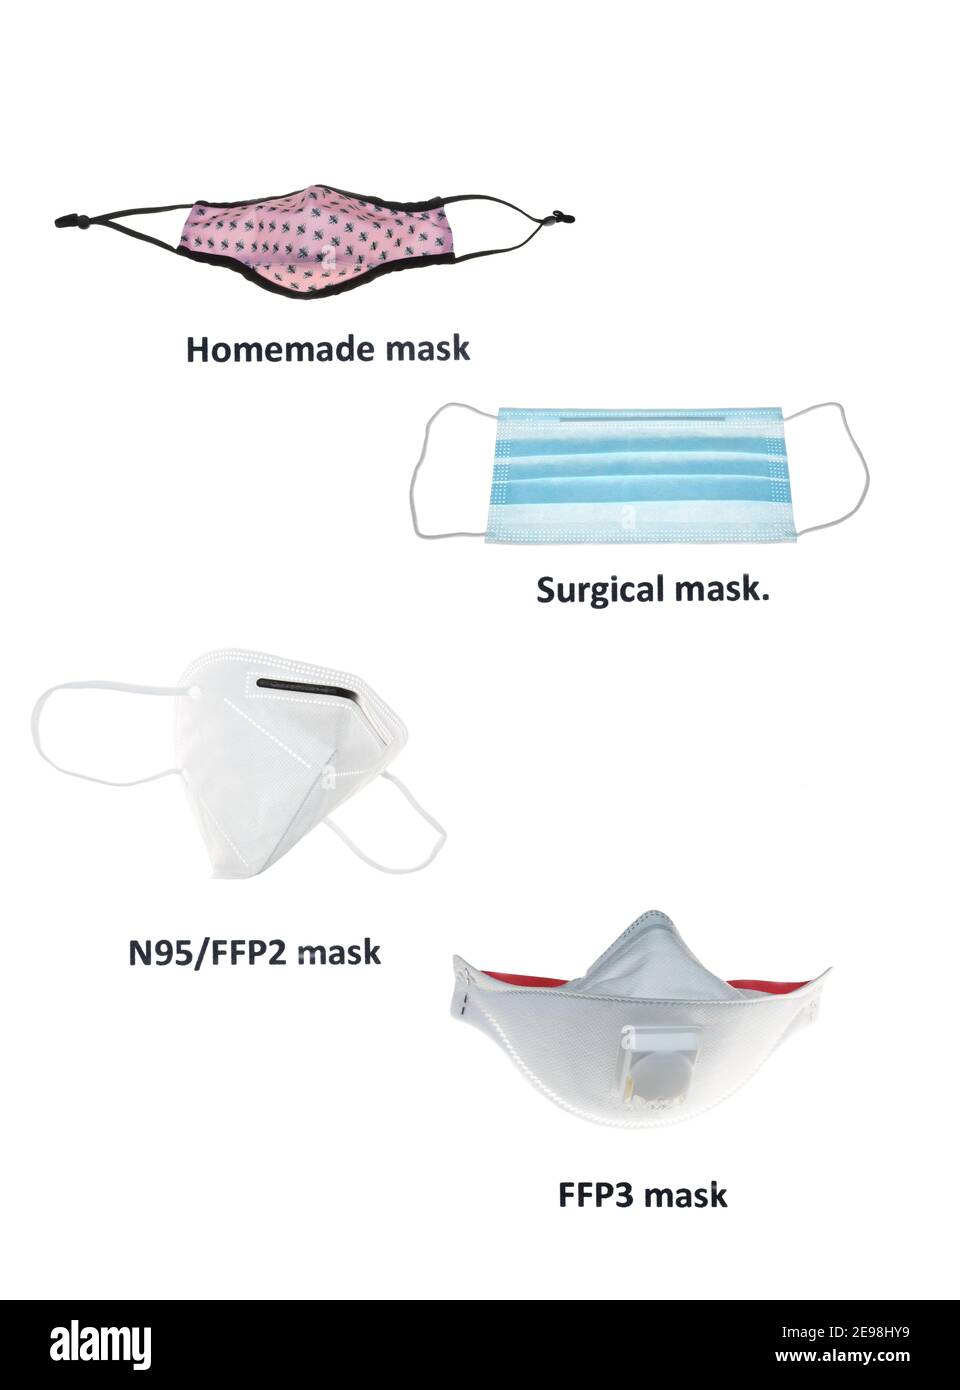 Quatre masques offrant différentes catégories de protection contre Covid-19, revêtement facial en tissu, masque chirurgical, masque N95, FFP2 et masque FFP3. Banque D'Images